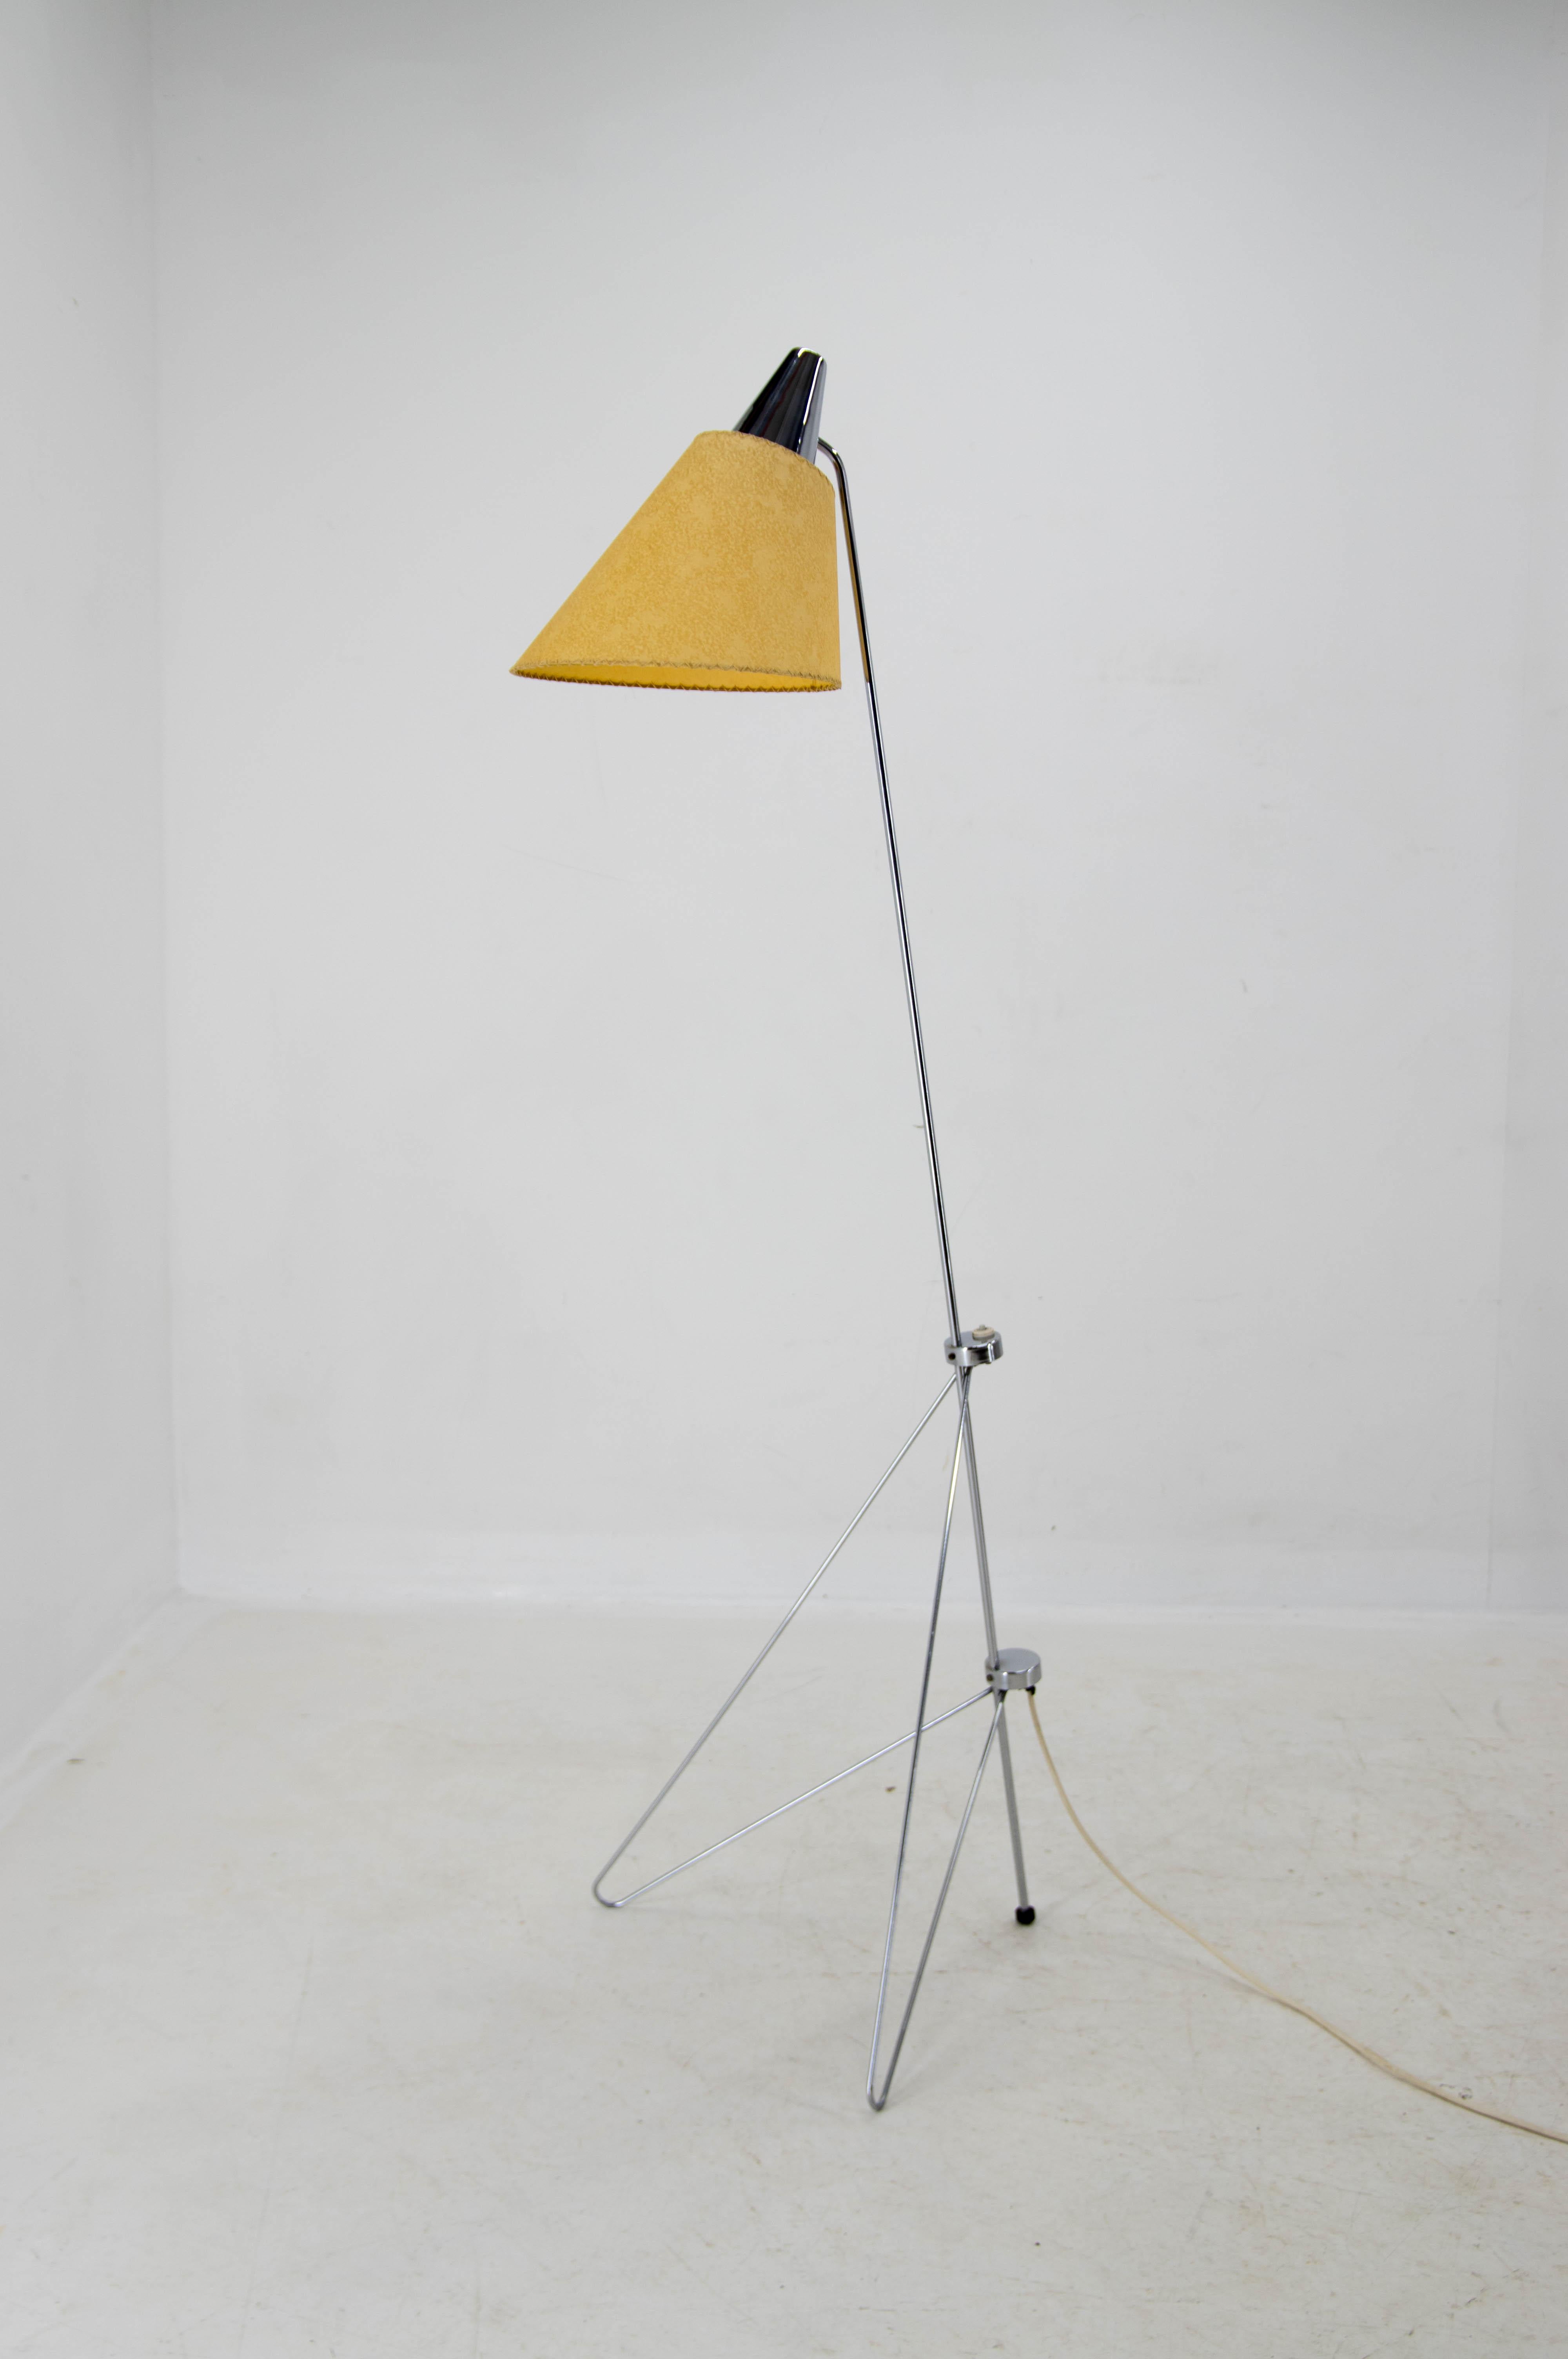 Magnifique lampadaire rare conçu dans les années 1950 par Josef Hurka pour Napako.
Restauré : chrome en très bon état - poli.
Nouvelle teinte en papier parchemin.
Câblé : 1x60W, ampoule E25-E27
Adaptateur pour prise américaine inclus